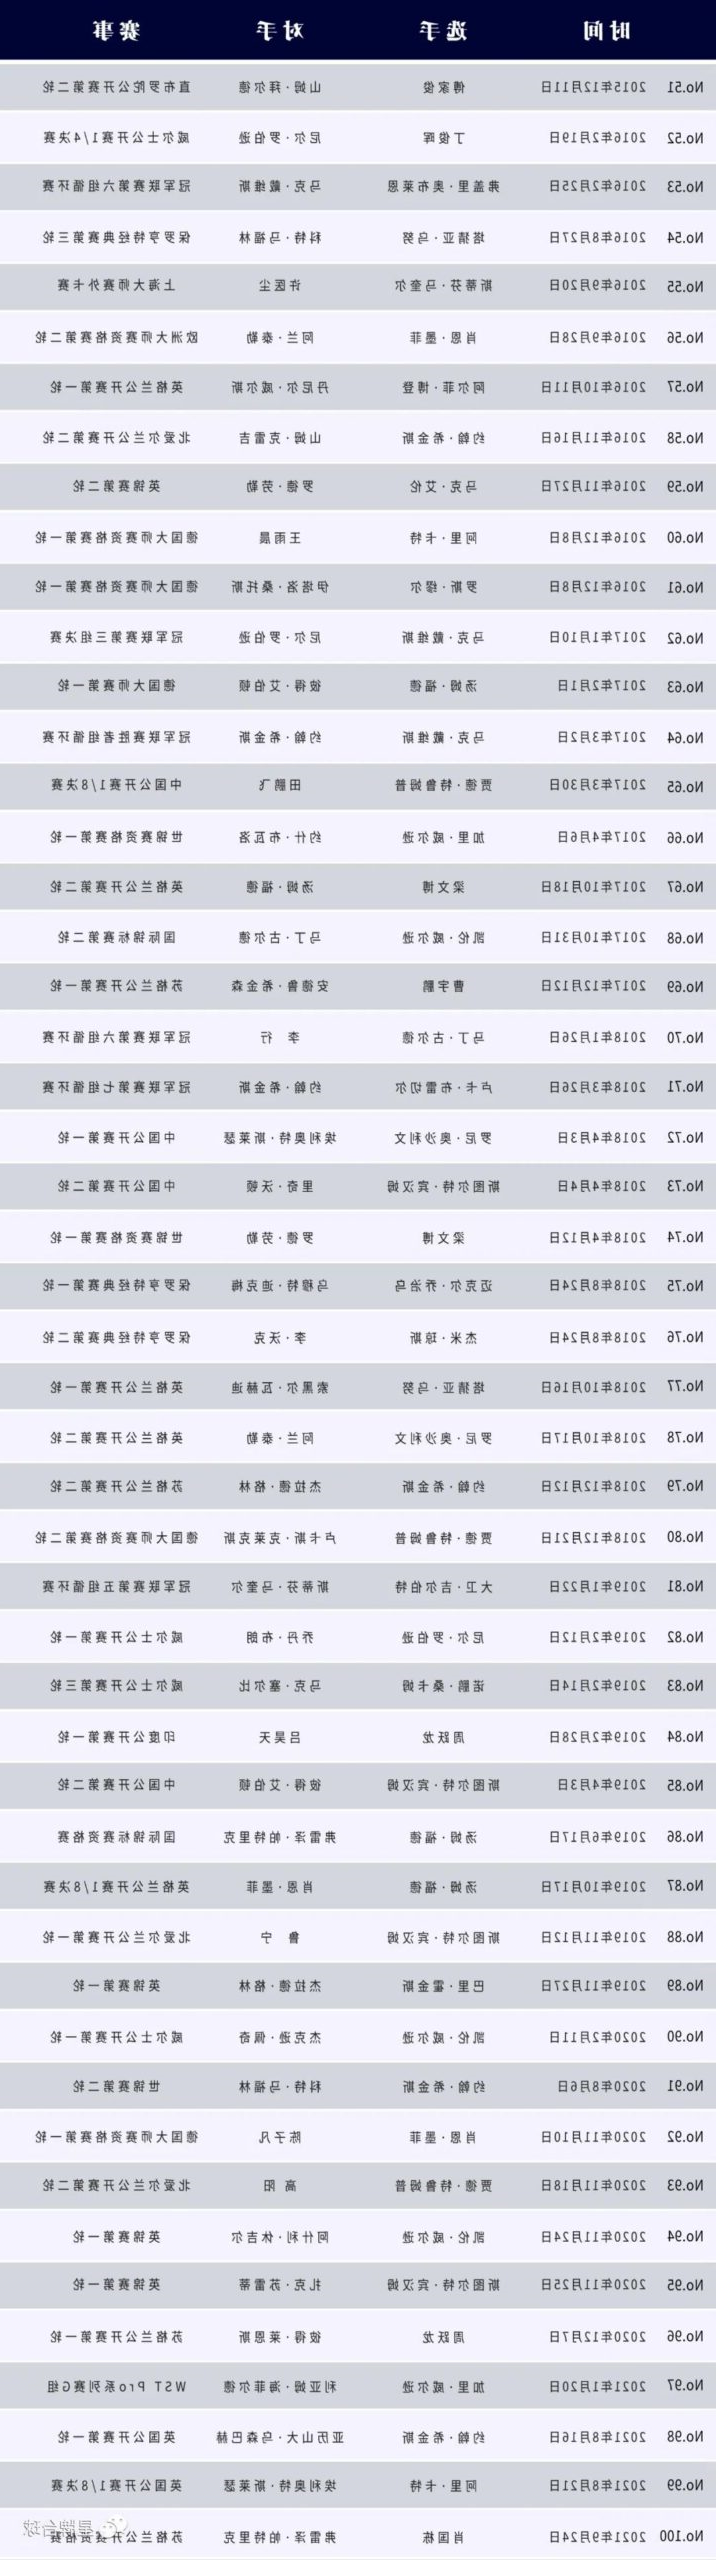 香港大师赛半决赛 傅家俊决胜局轰出147 kok娱乐平台
台球桌见证的第111个满分杆！